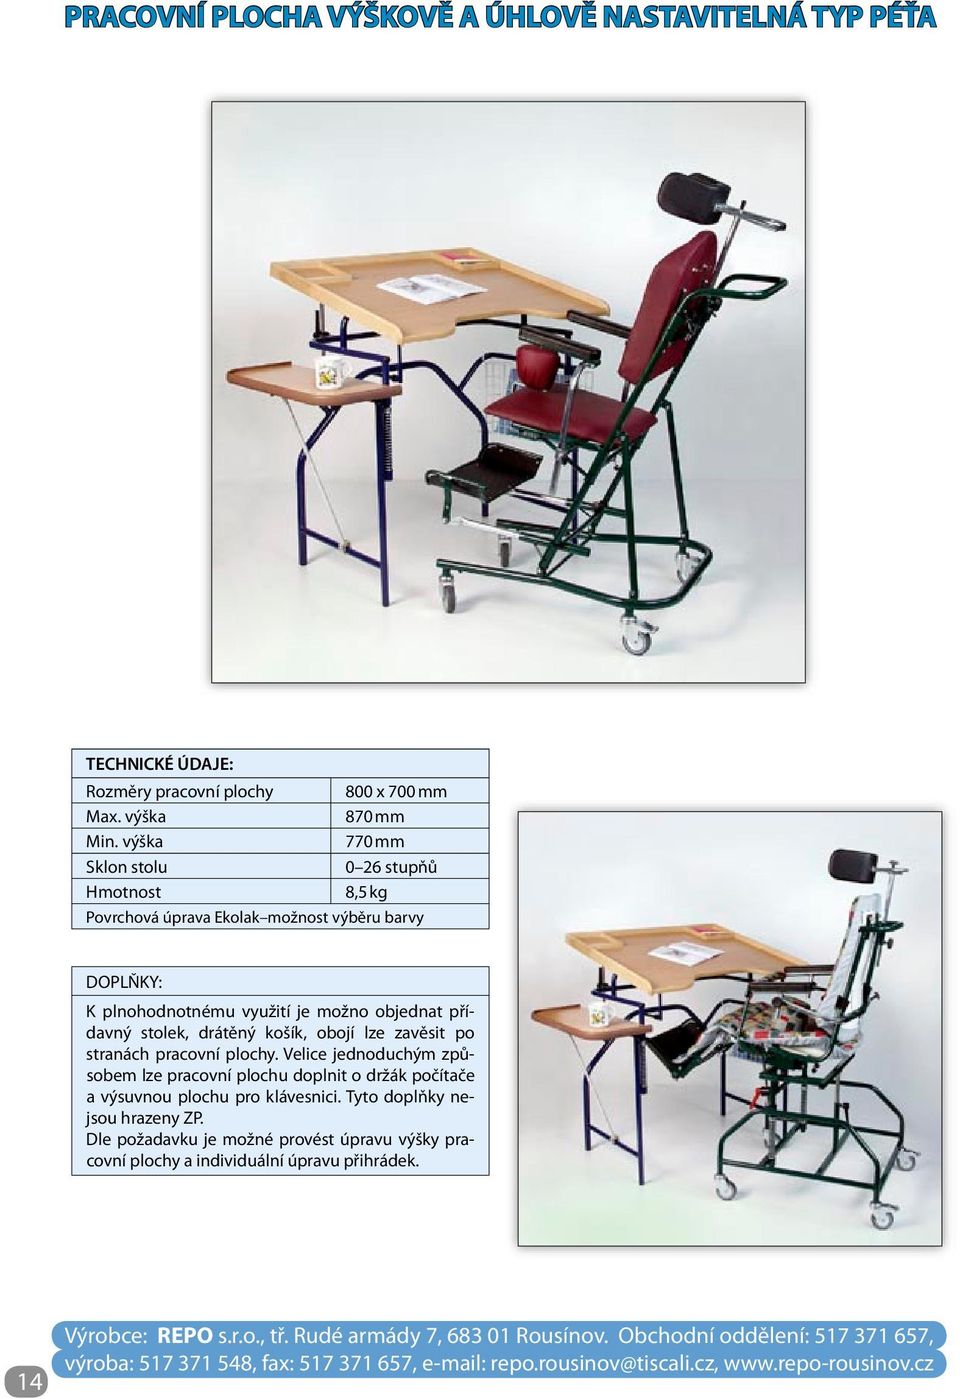 objednat přídavný stolek, drátěný košík, obojí lze zavěsit po stranách pracovní plochy.